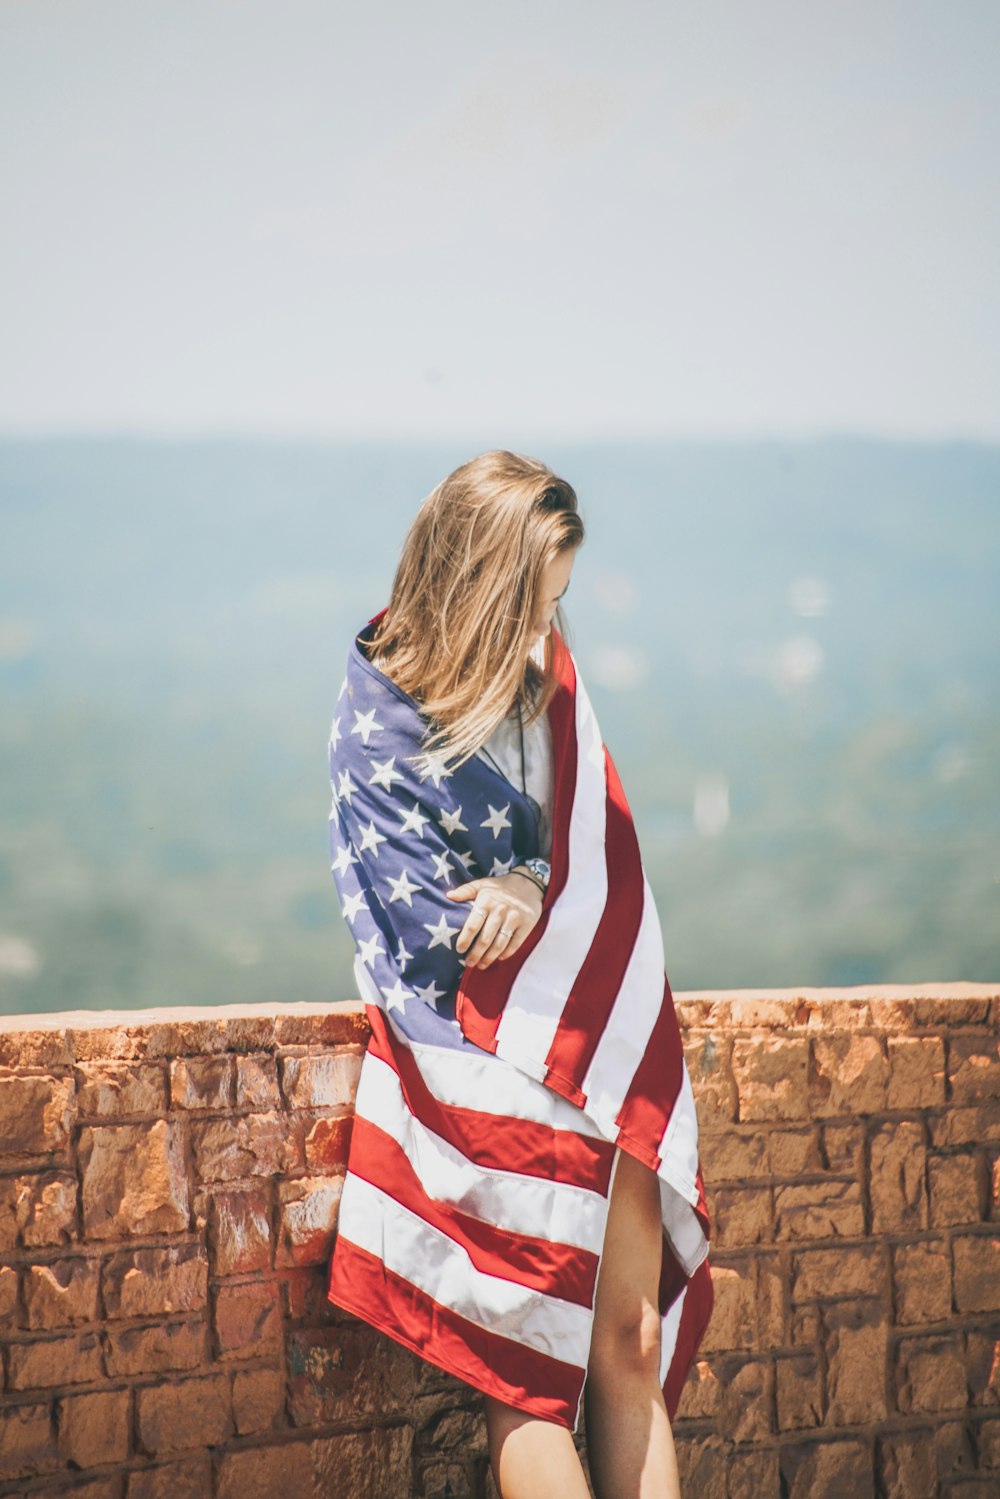 물줄기 근처에 미국 국기가 있는 시체를 감싸는 벽돌 벽에 기대어 서 있는 여자